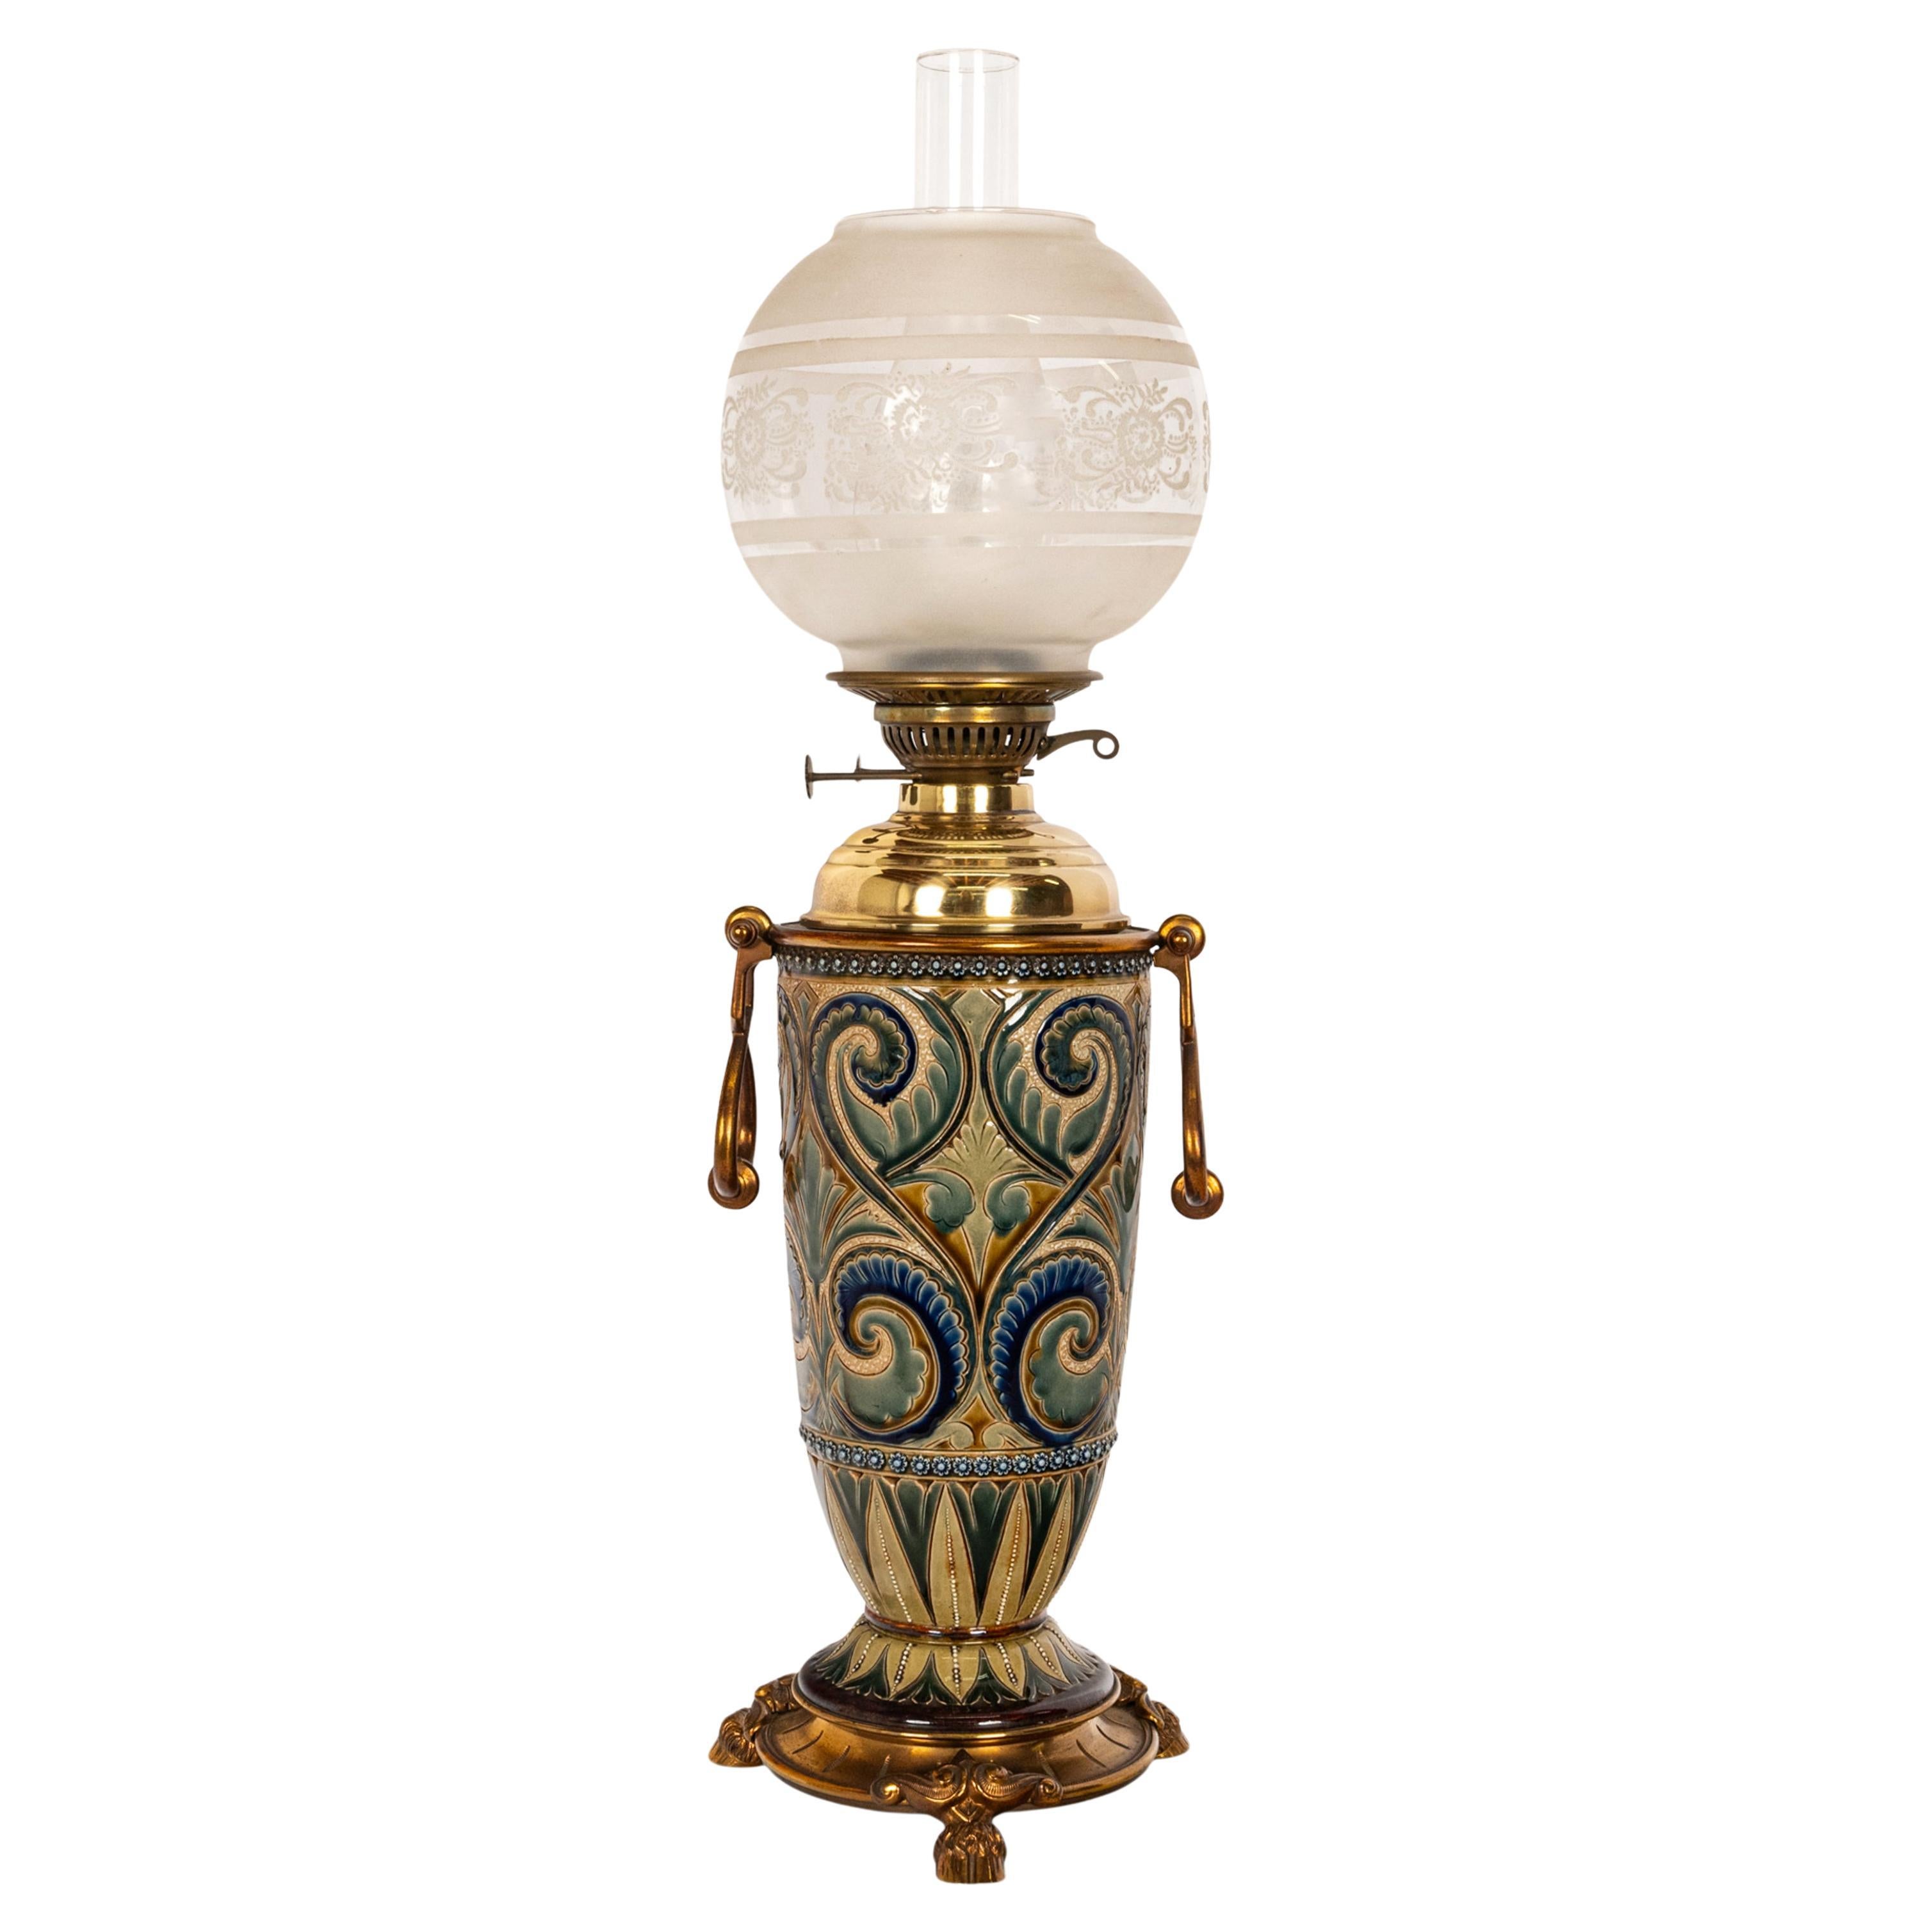 Antique Art Pottery Stoneware Dalton Lambeth Oil Lamp Signed Edith Lupton 1884 For Sale